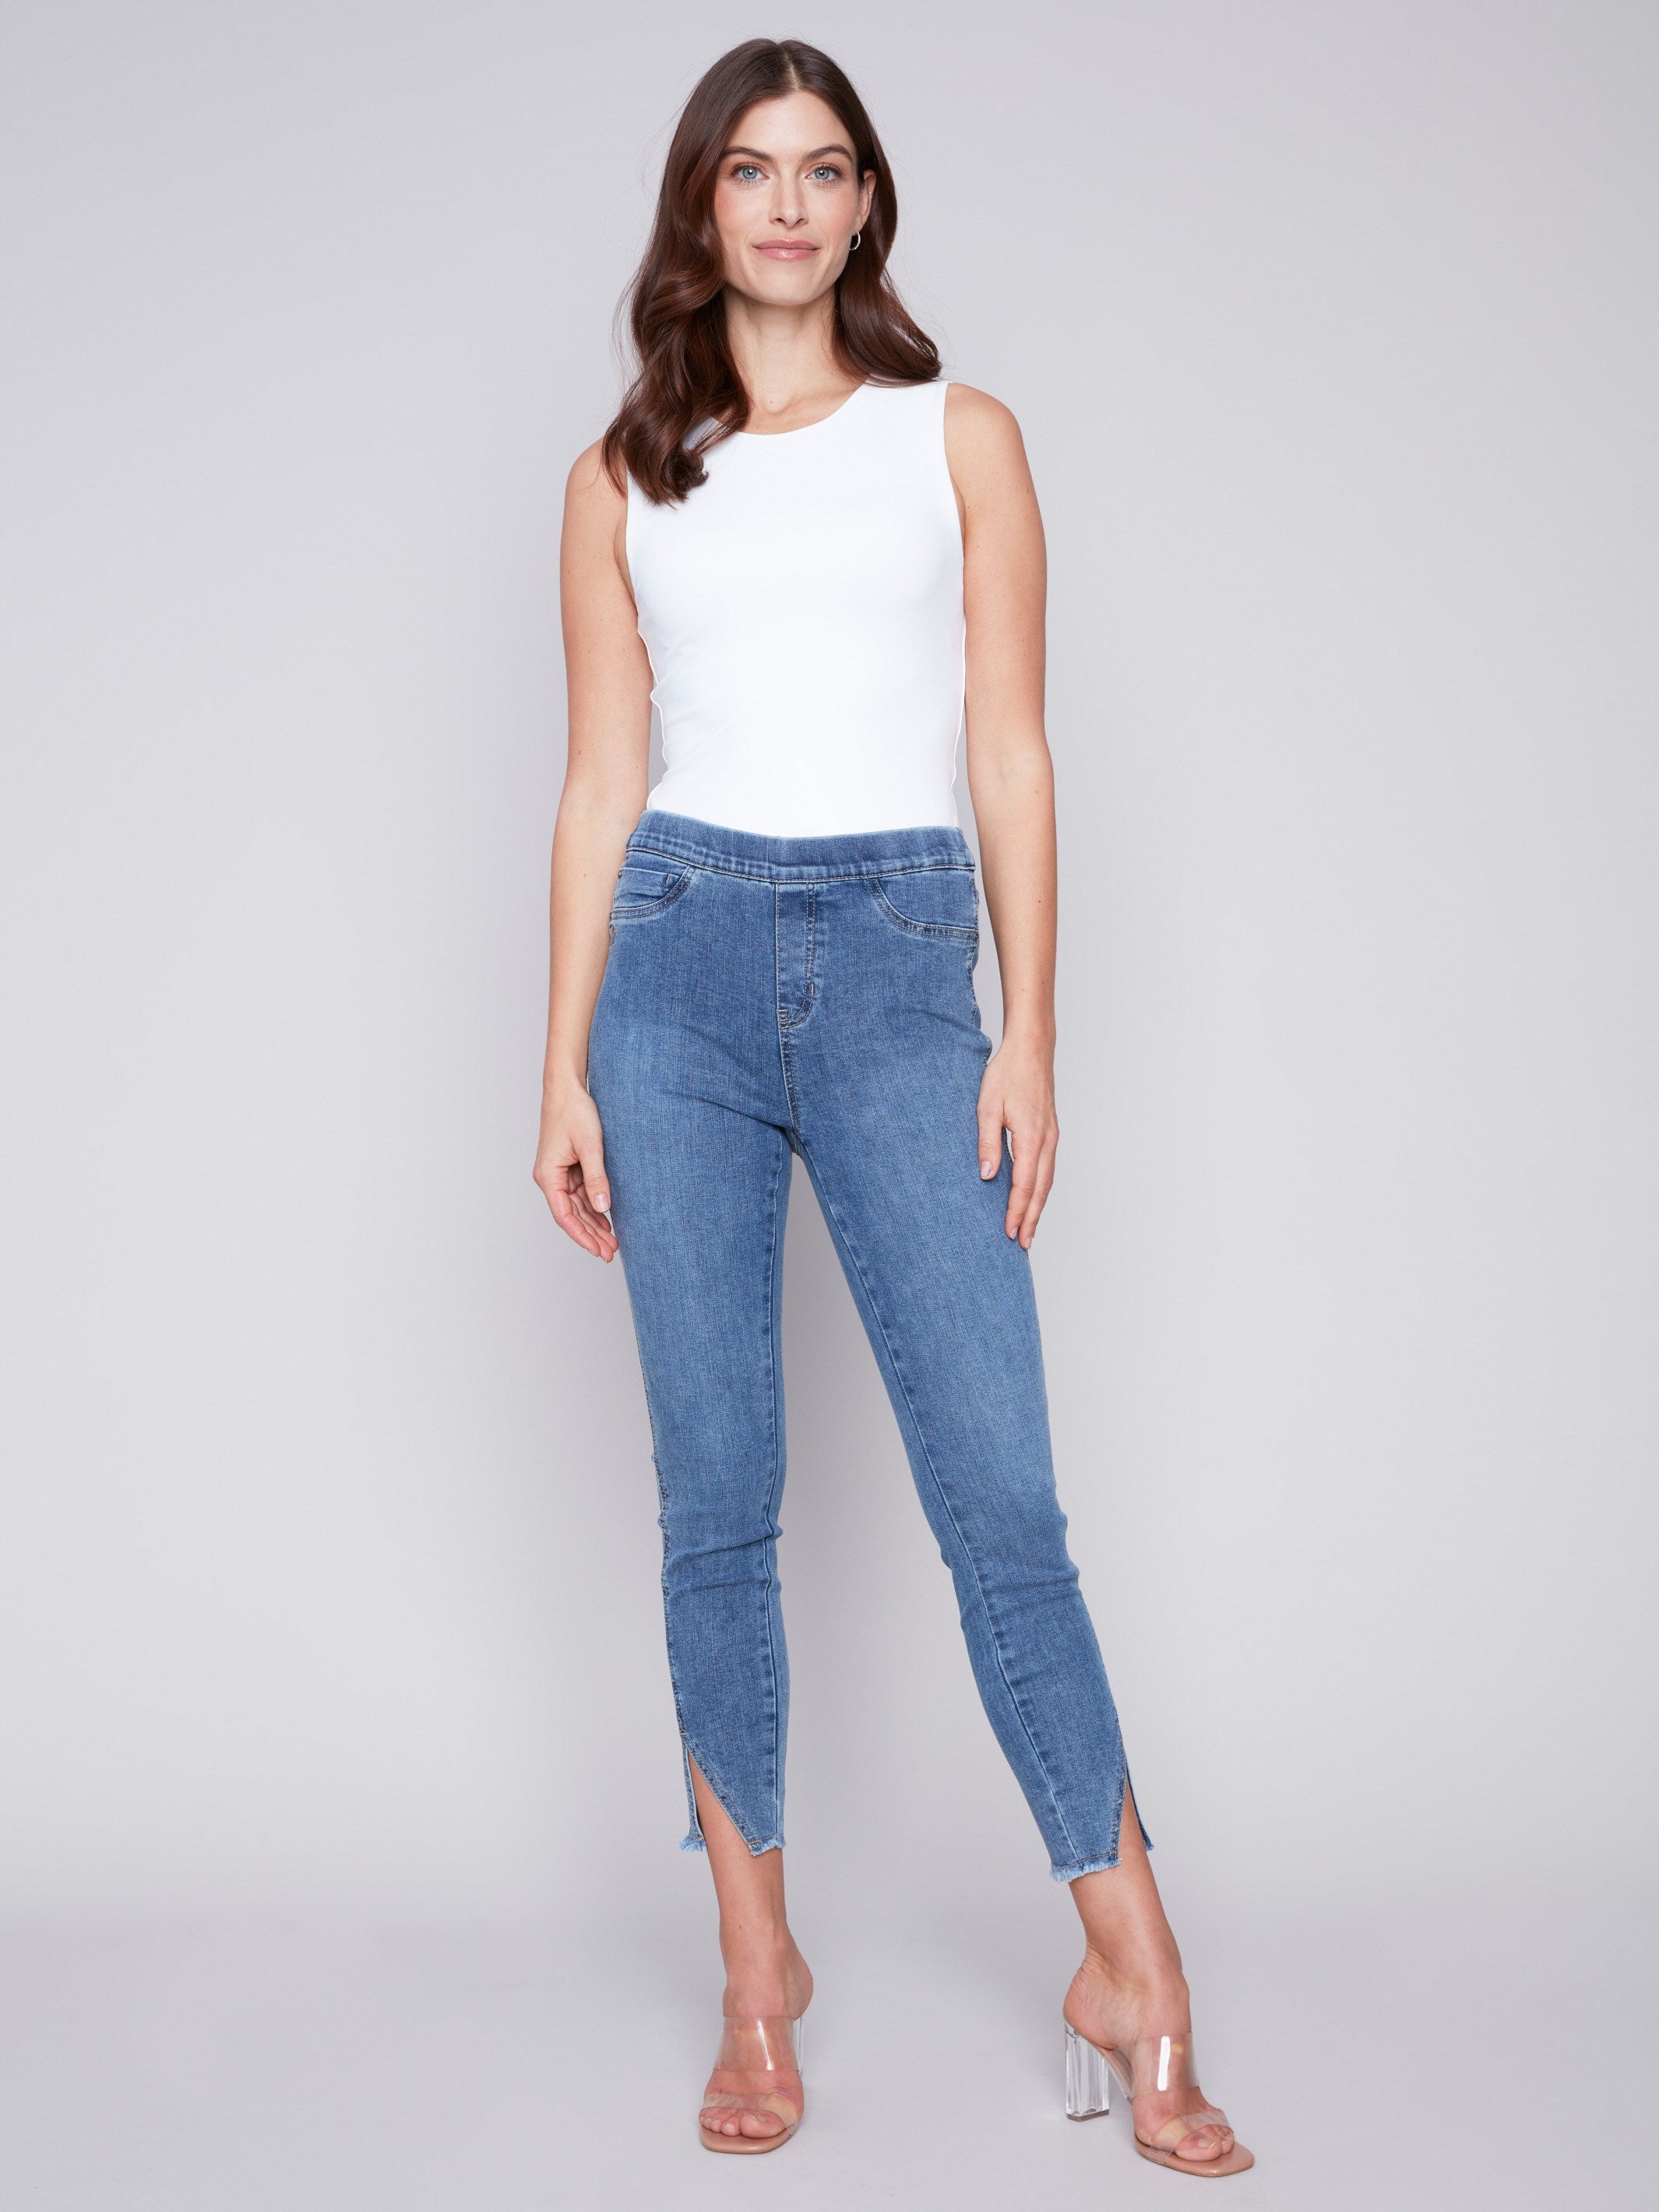 Charlie B Pull-On Jeans with Split Hem - Medium Blue - Image 4